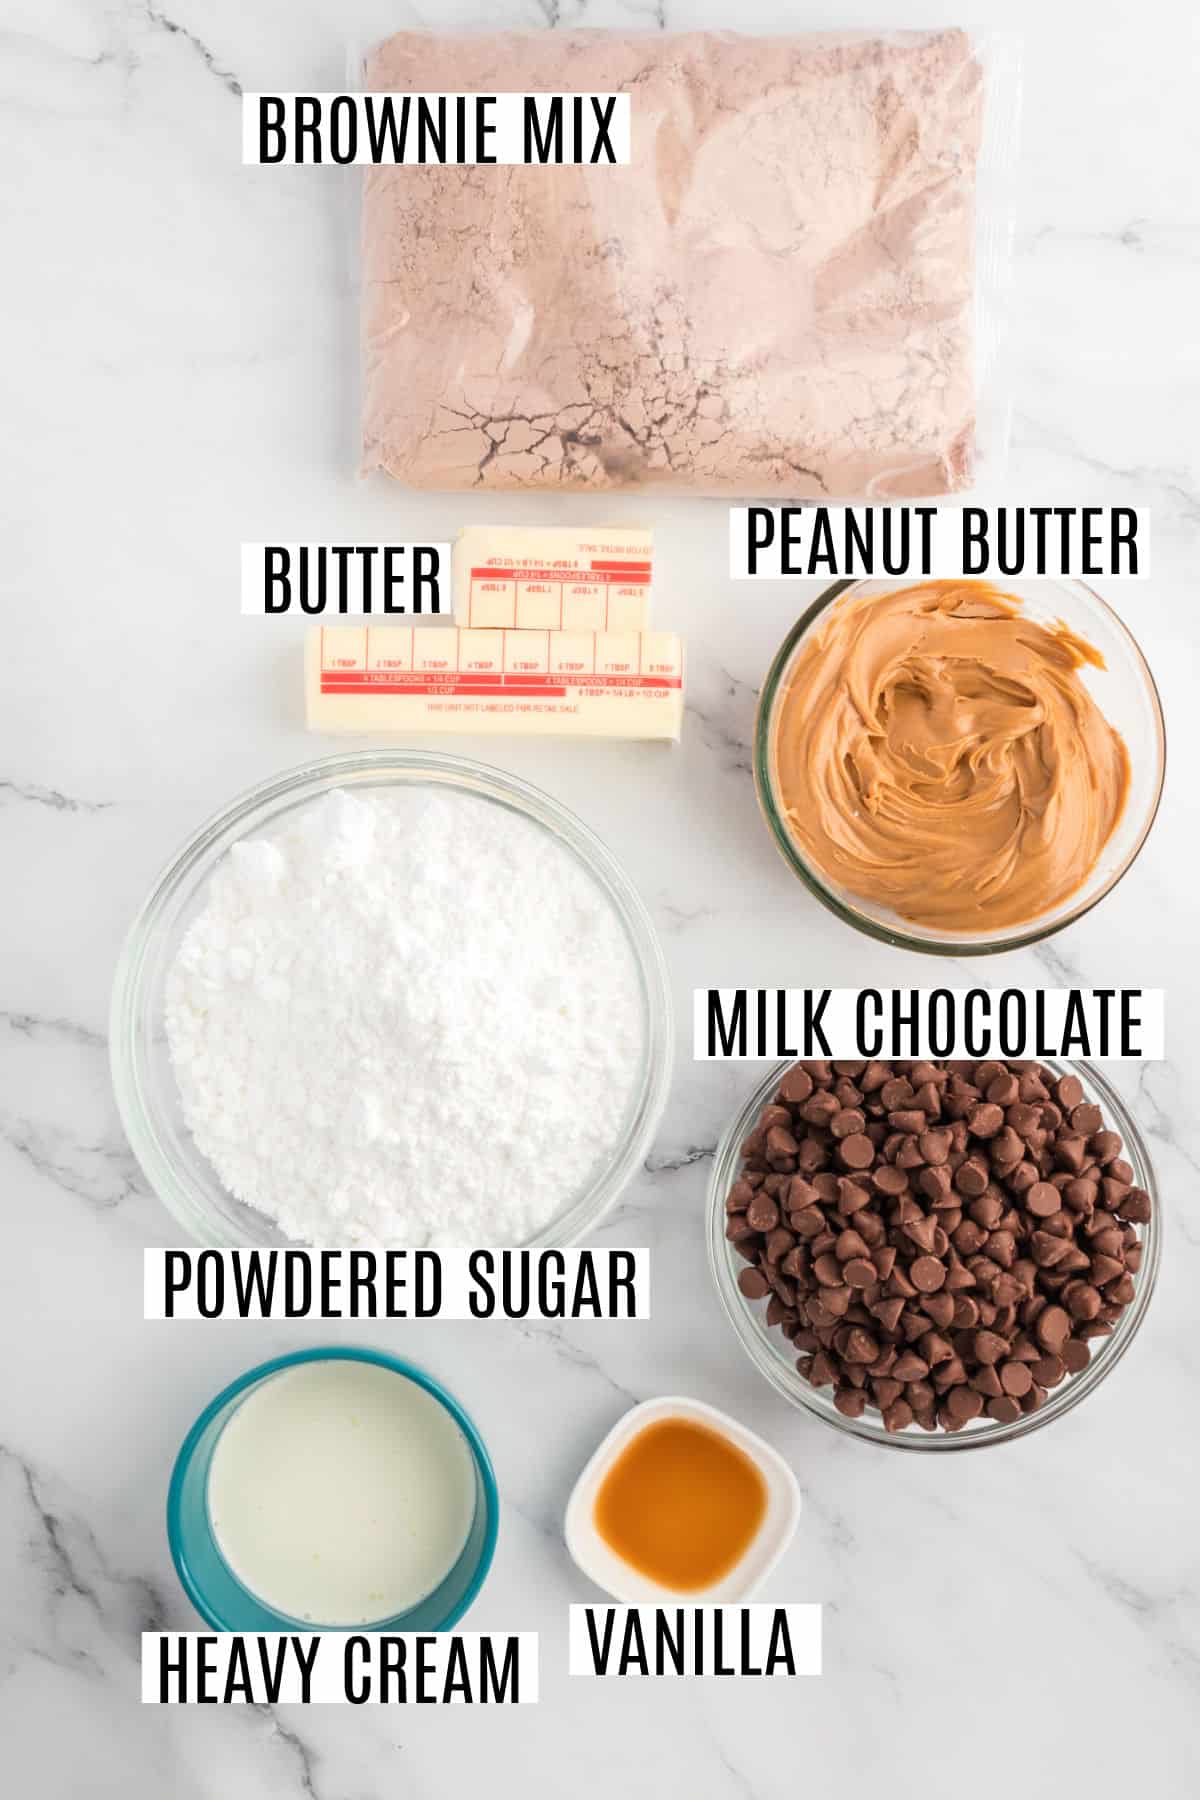 Ingredients needed to make buckeye brownies.